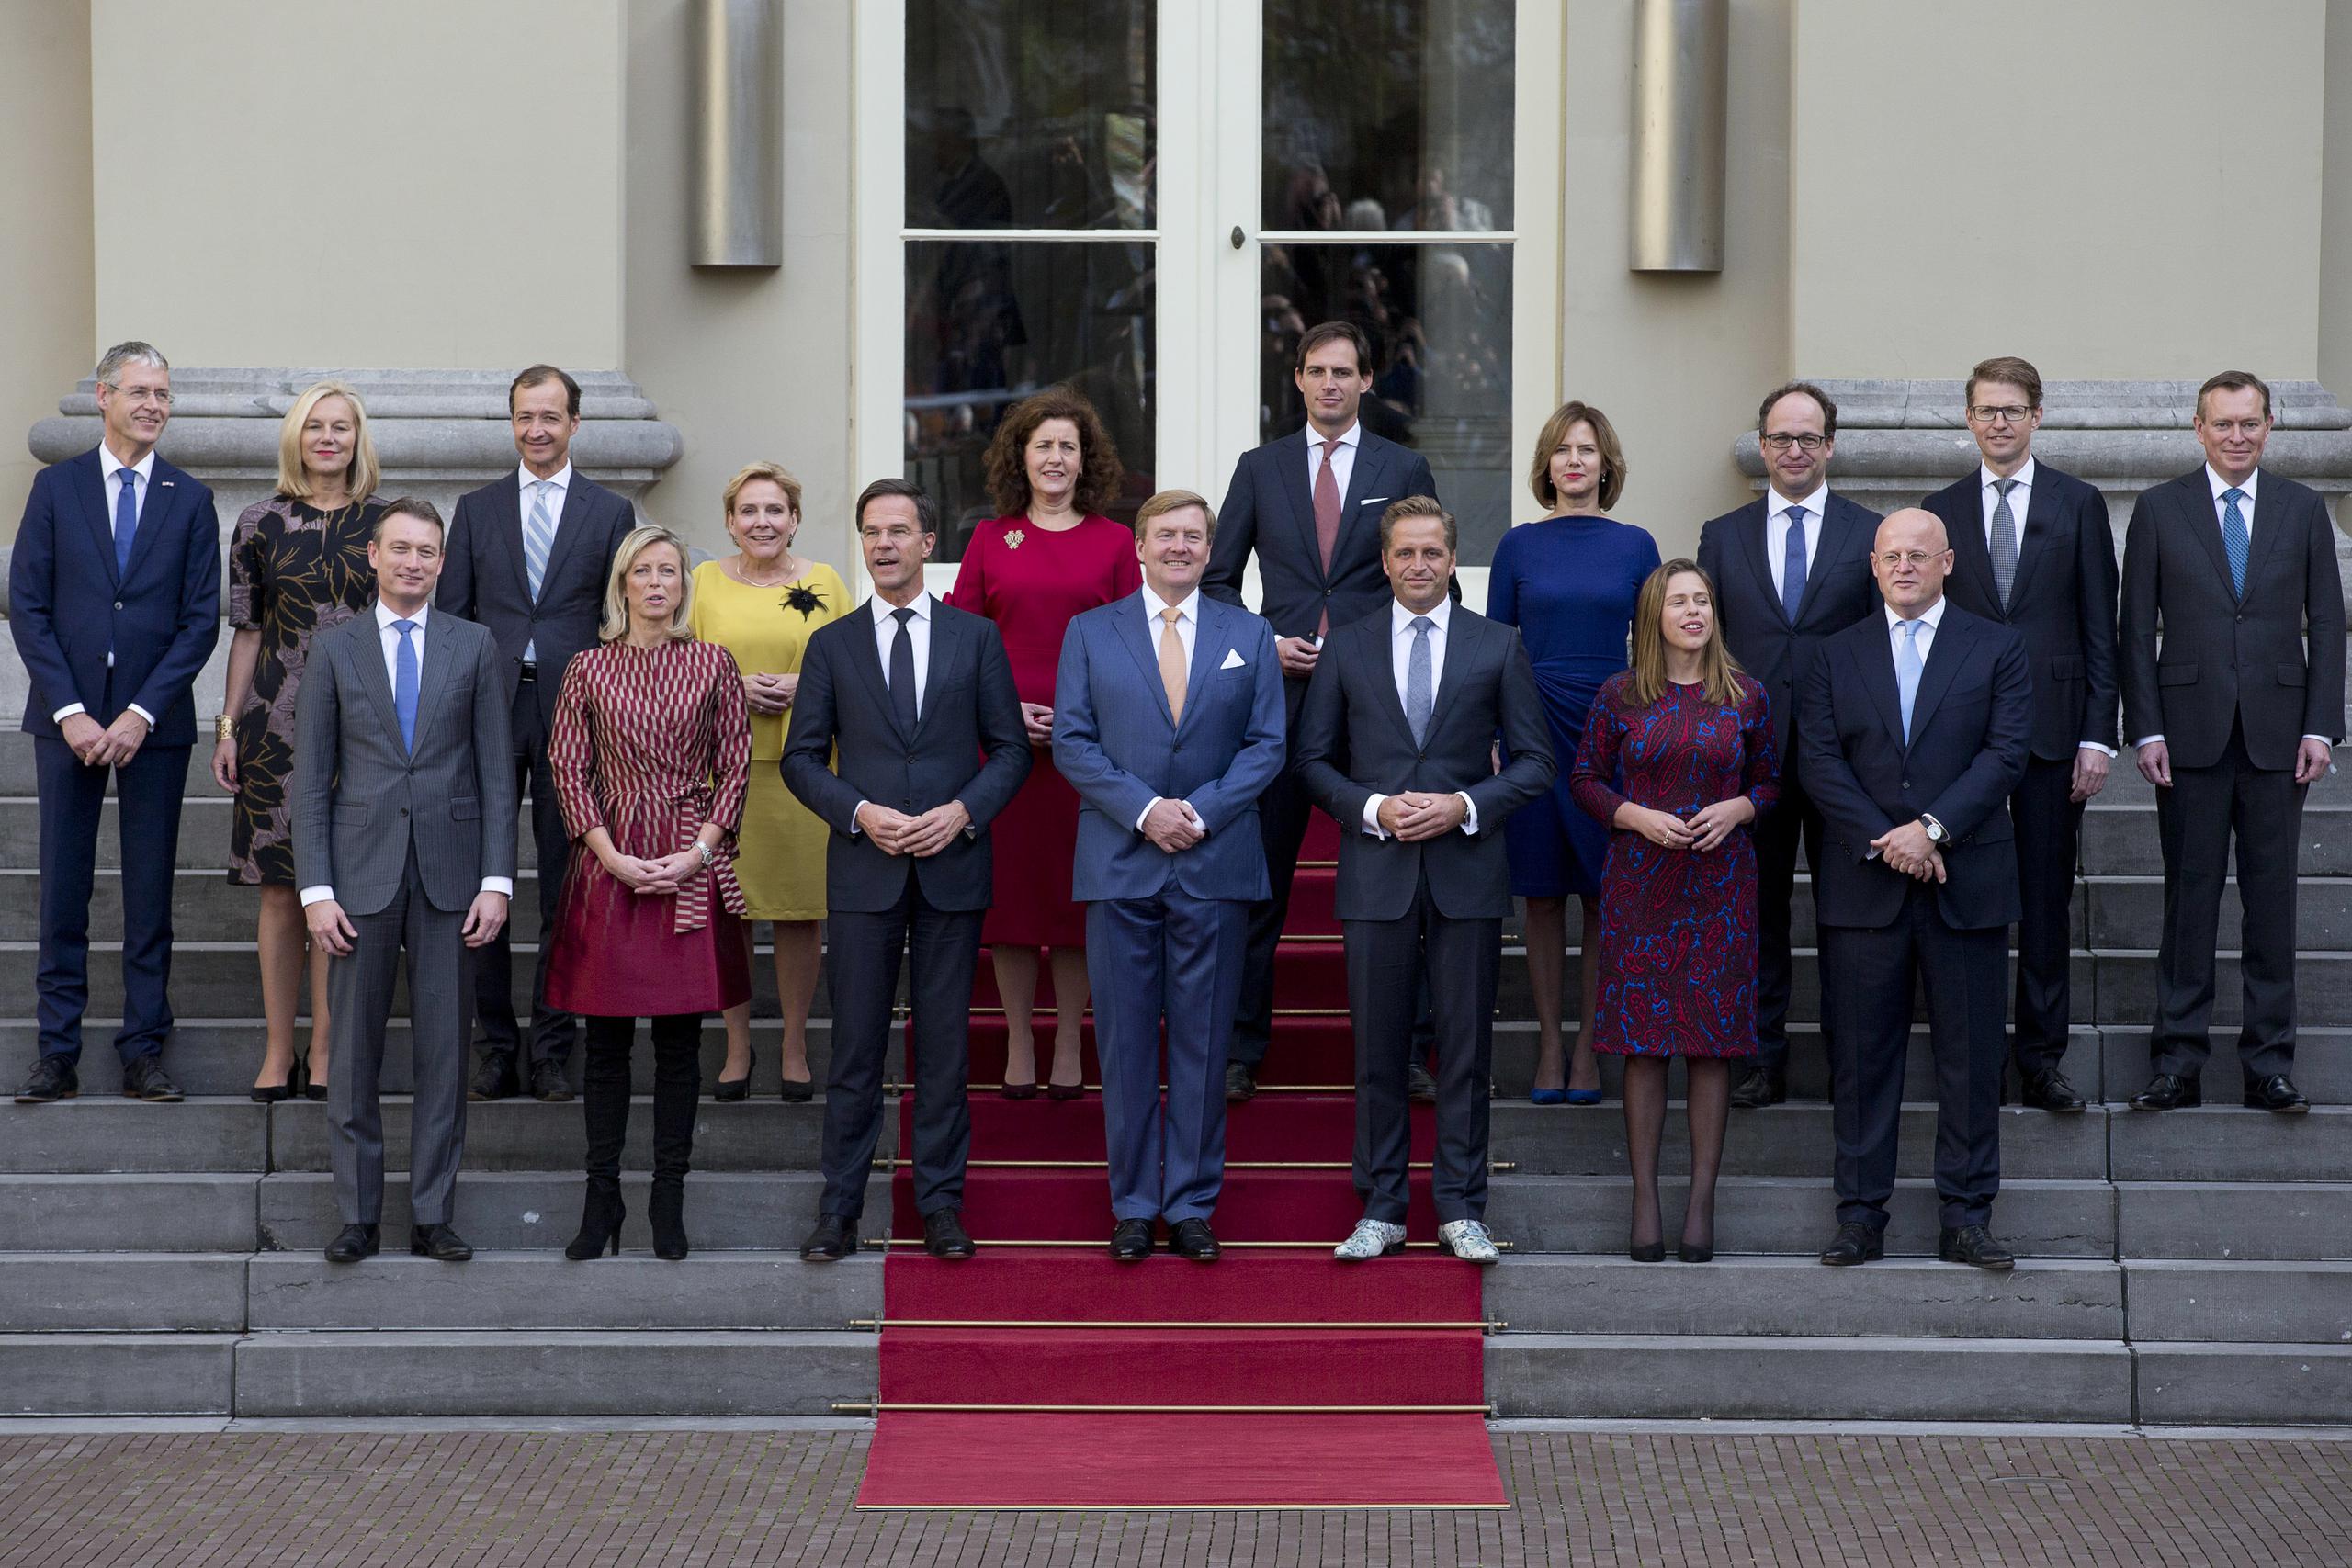 El primer ministro Mark Rutte, centro izquierda, y el rey Guillermo Alejandro, centro, posan con los ministros para la foto oficial en la escalinata del palacio real en La Haya, Holanda.